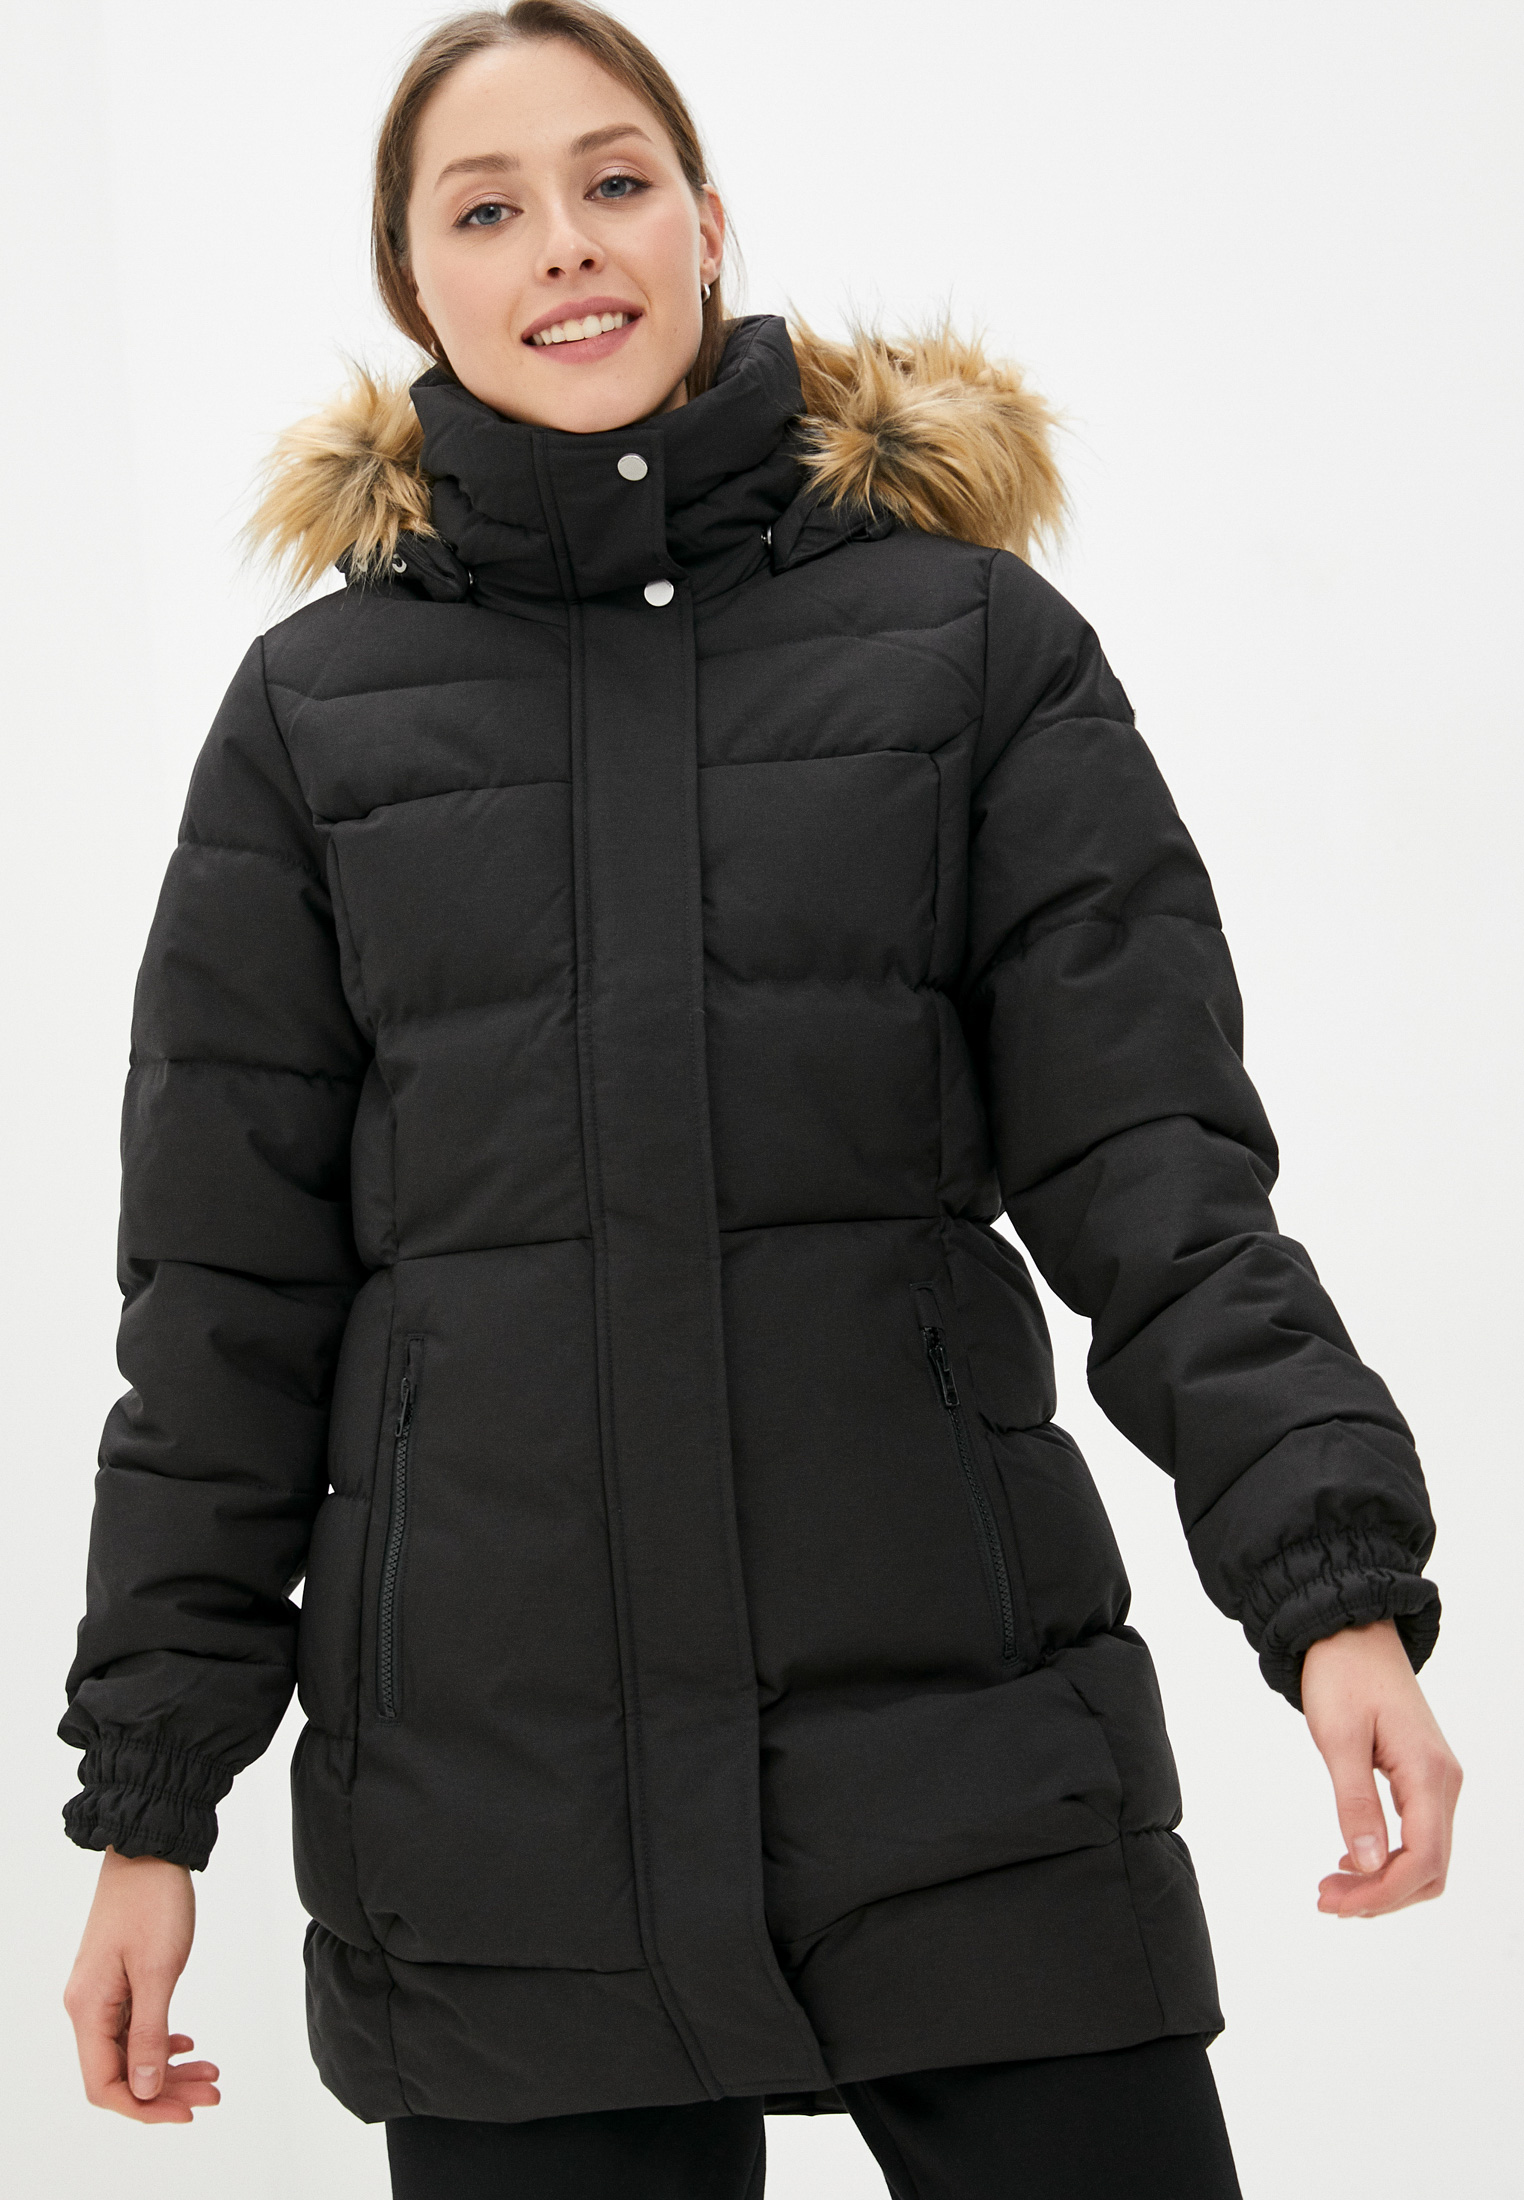 Куртка утепленная Helly Hansen W BLUME PUFFY PARKA, цвет: черный,  RTLAAP888401 — купить в интернет-магазине Lamoda